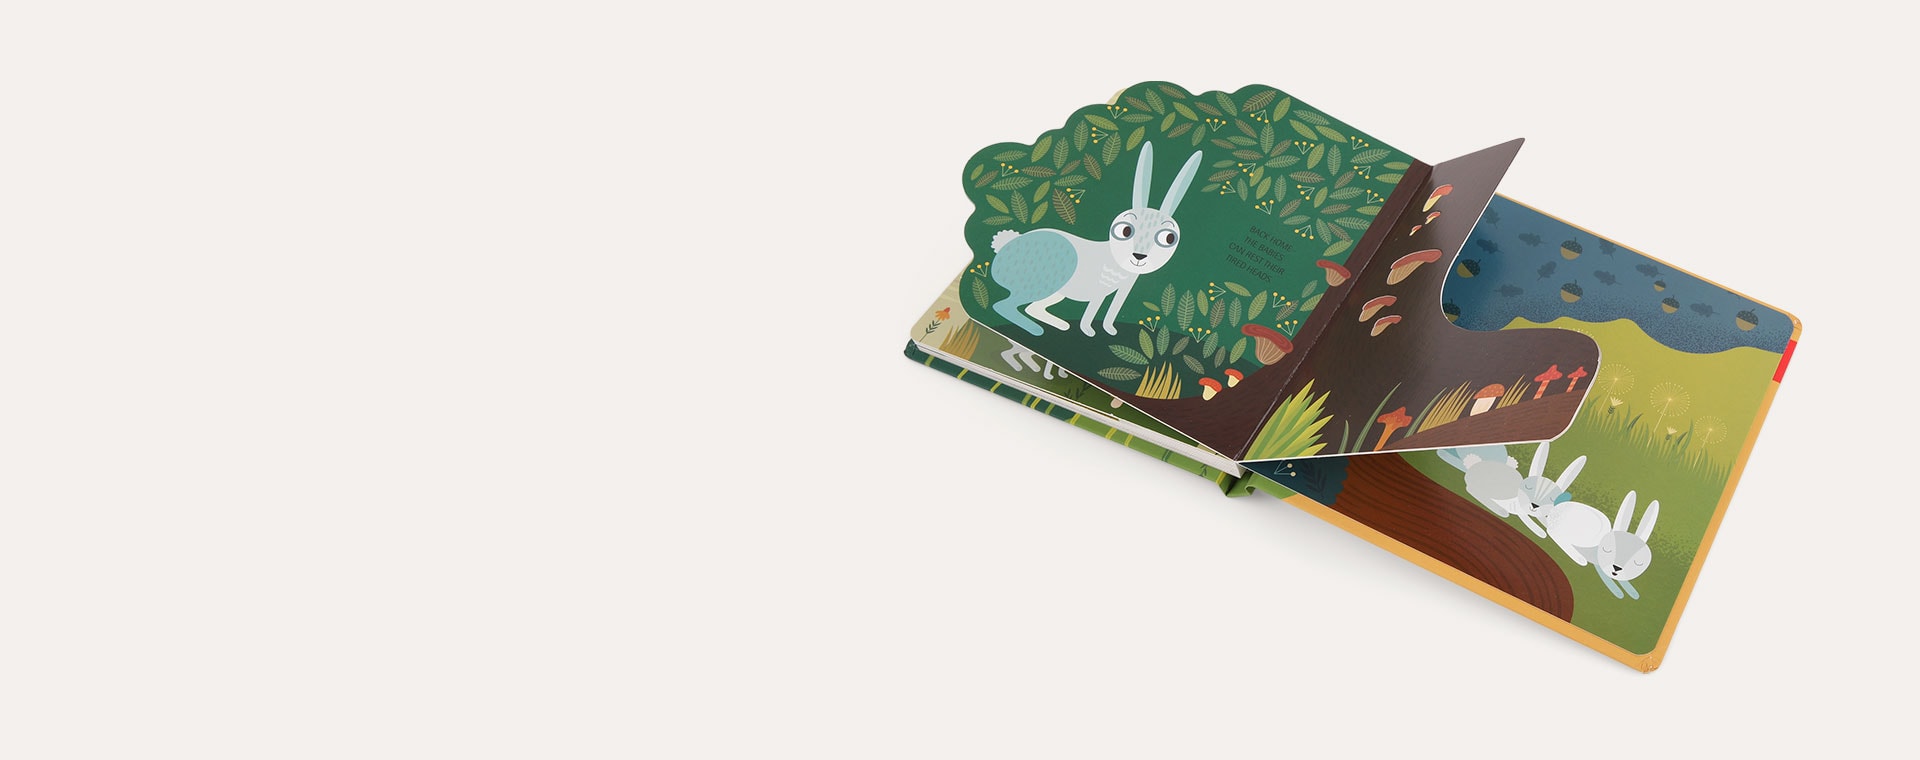 Good Morning Little Hare bookspeed Good Morning Little Hare